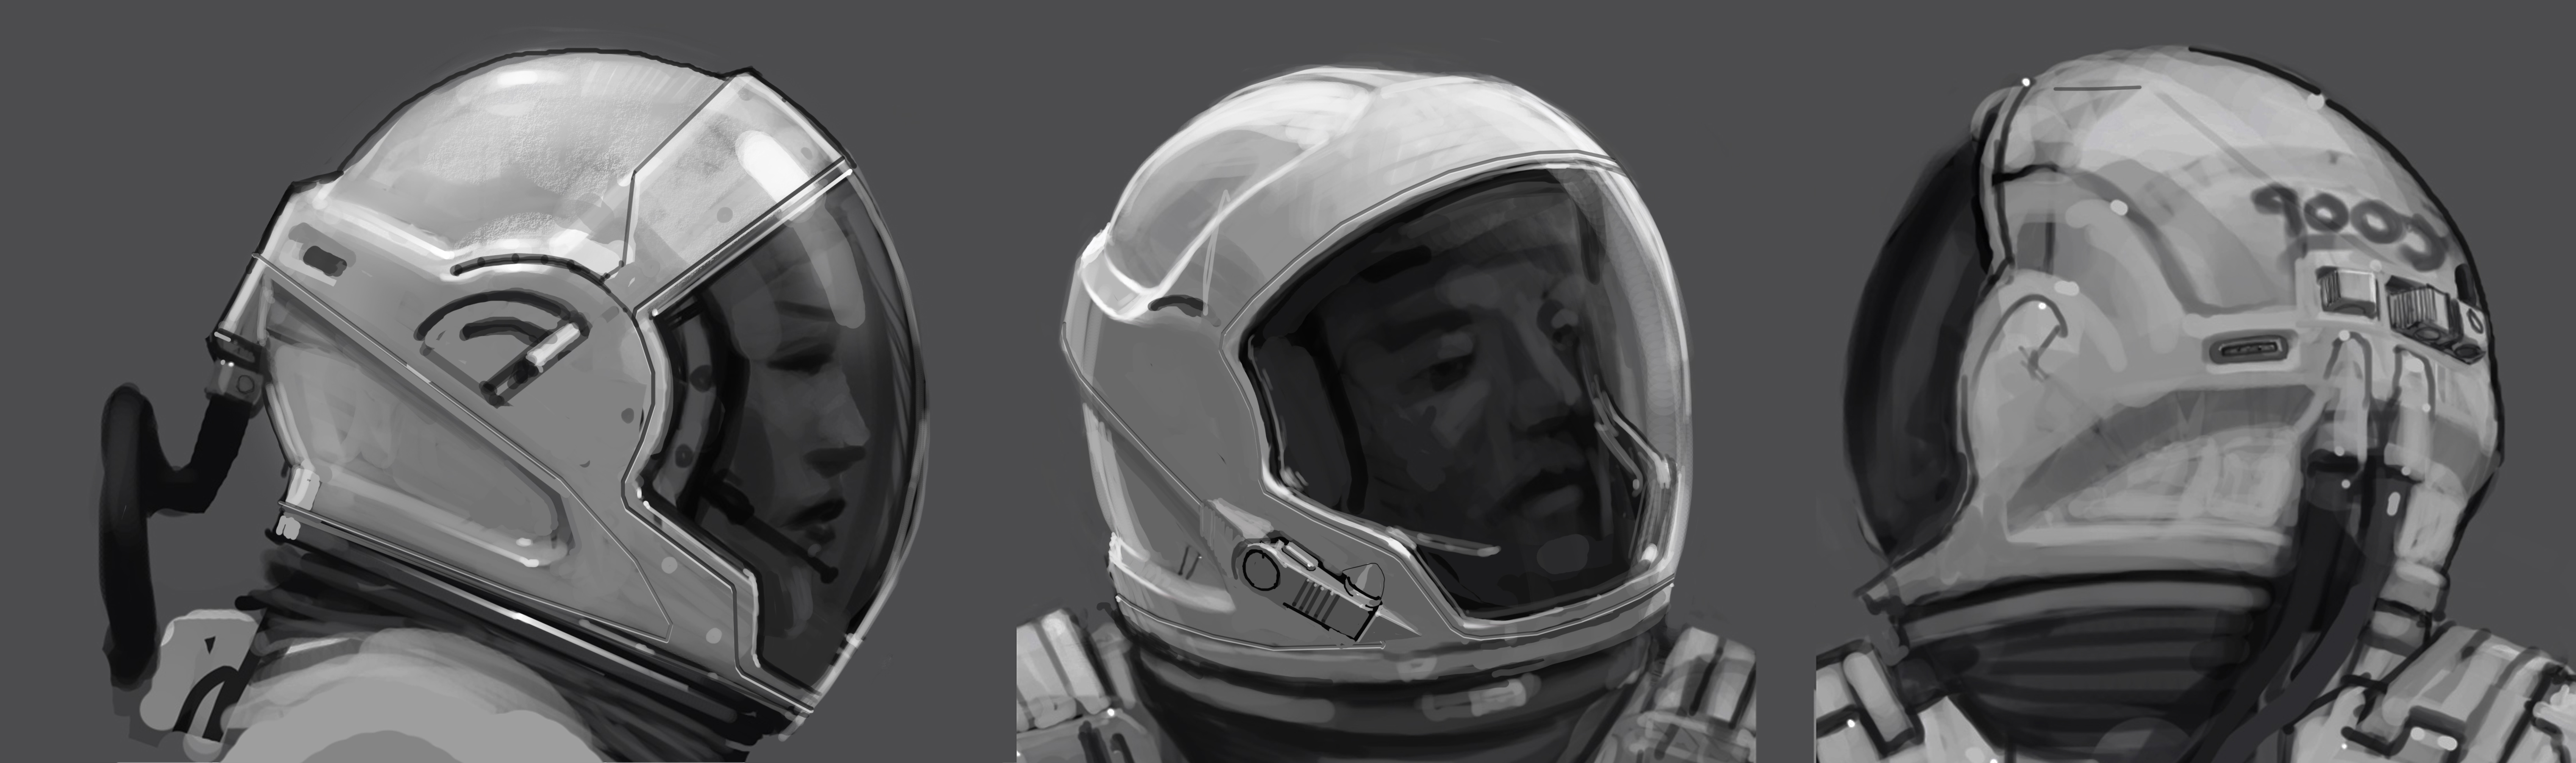 interstellar_space_suit_helmet01_copy